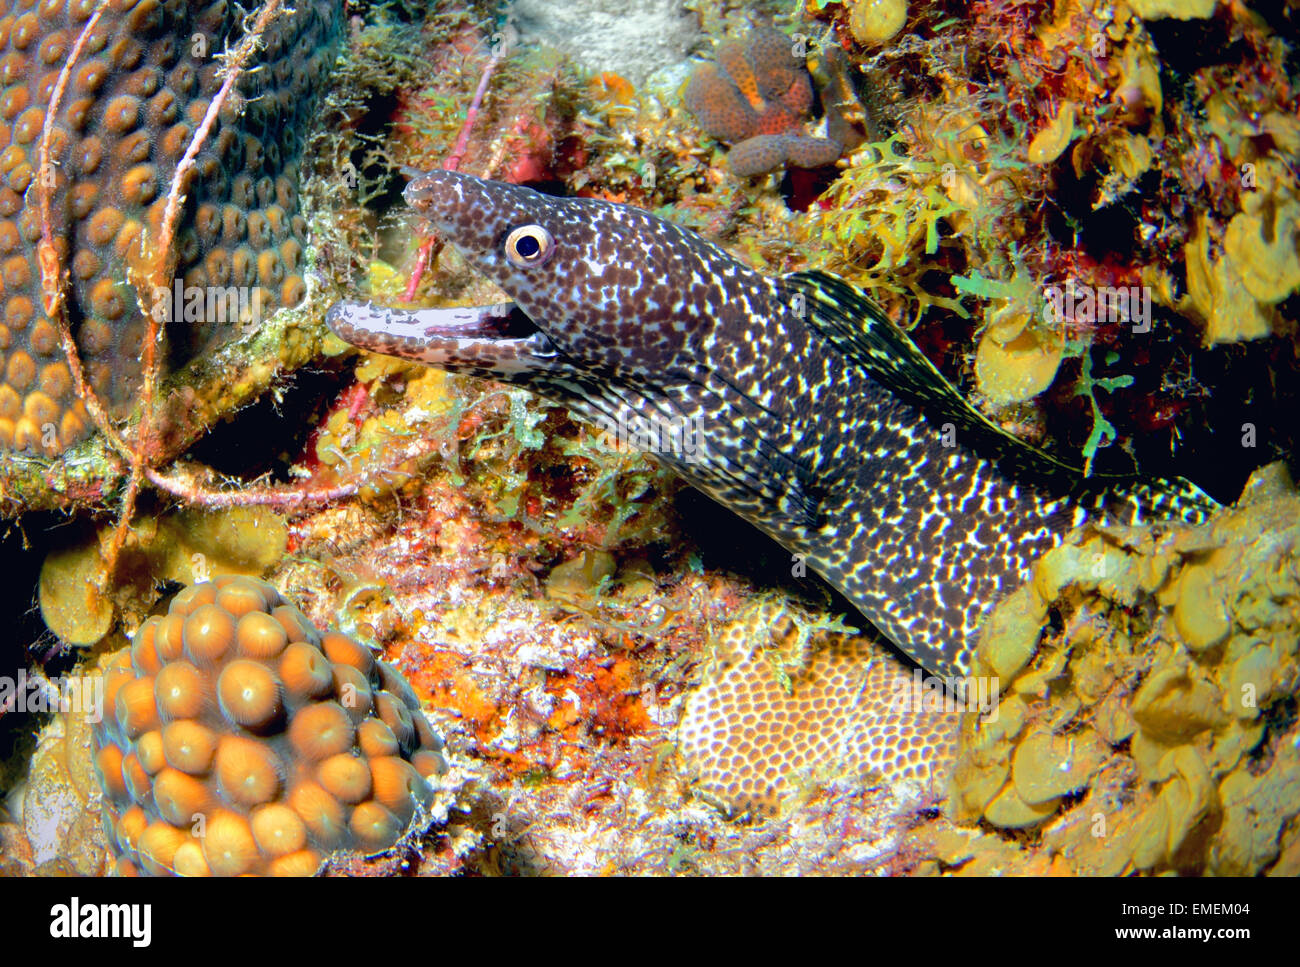 Une belle murène tachetée vivant parmi les récifs coralliens de Curacao, Antilles néerlandaises Banque D'Images